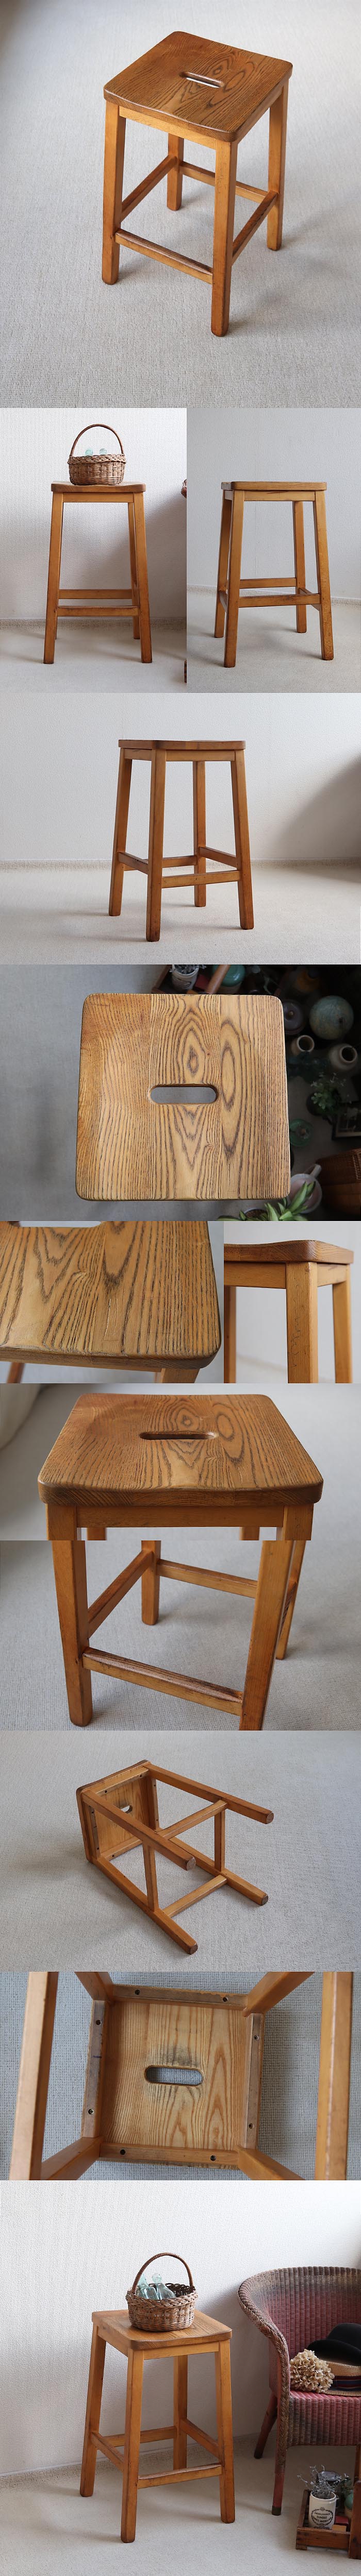 イギリス ヴィンテージ ハイスツール 木製椅子 アトリエ カントリー